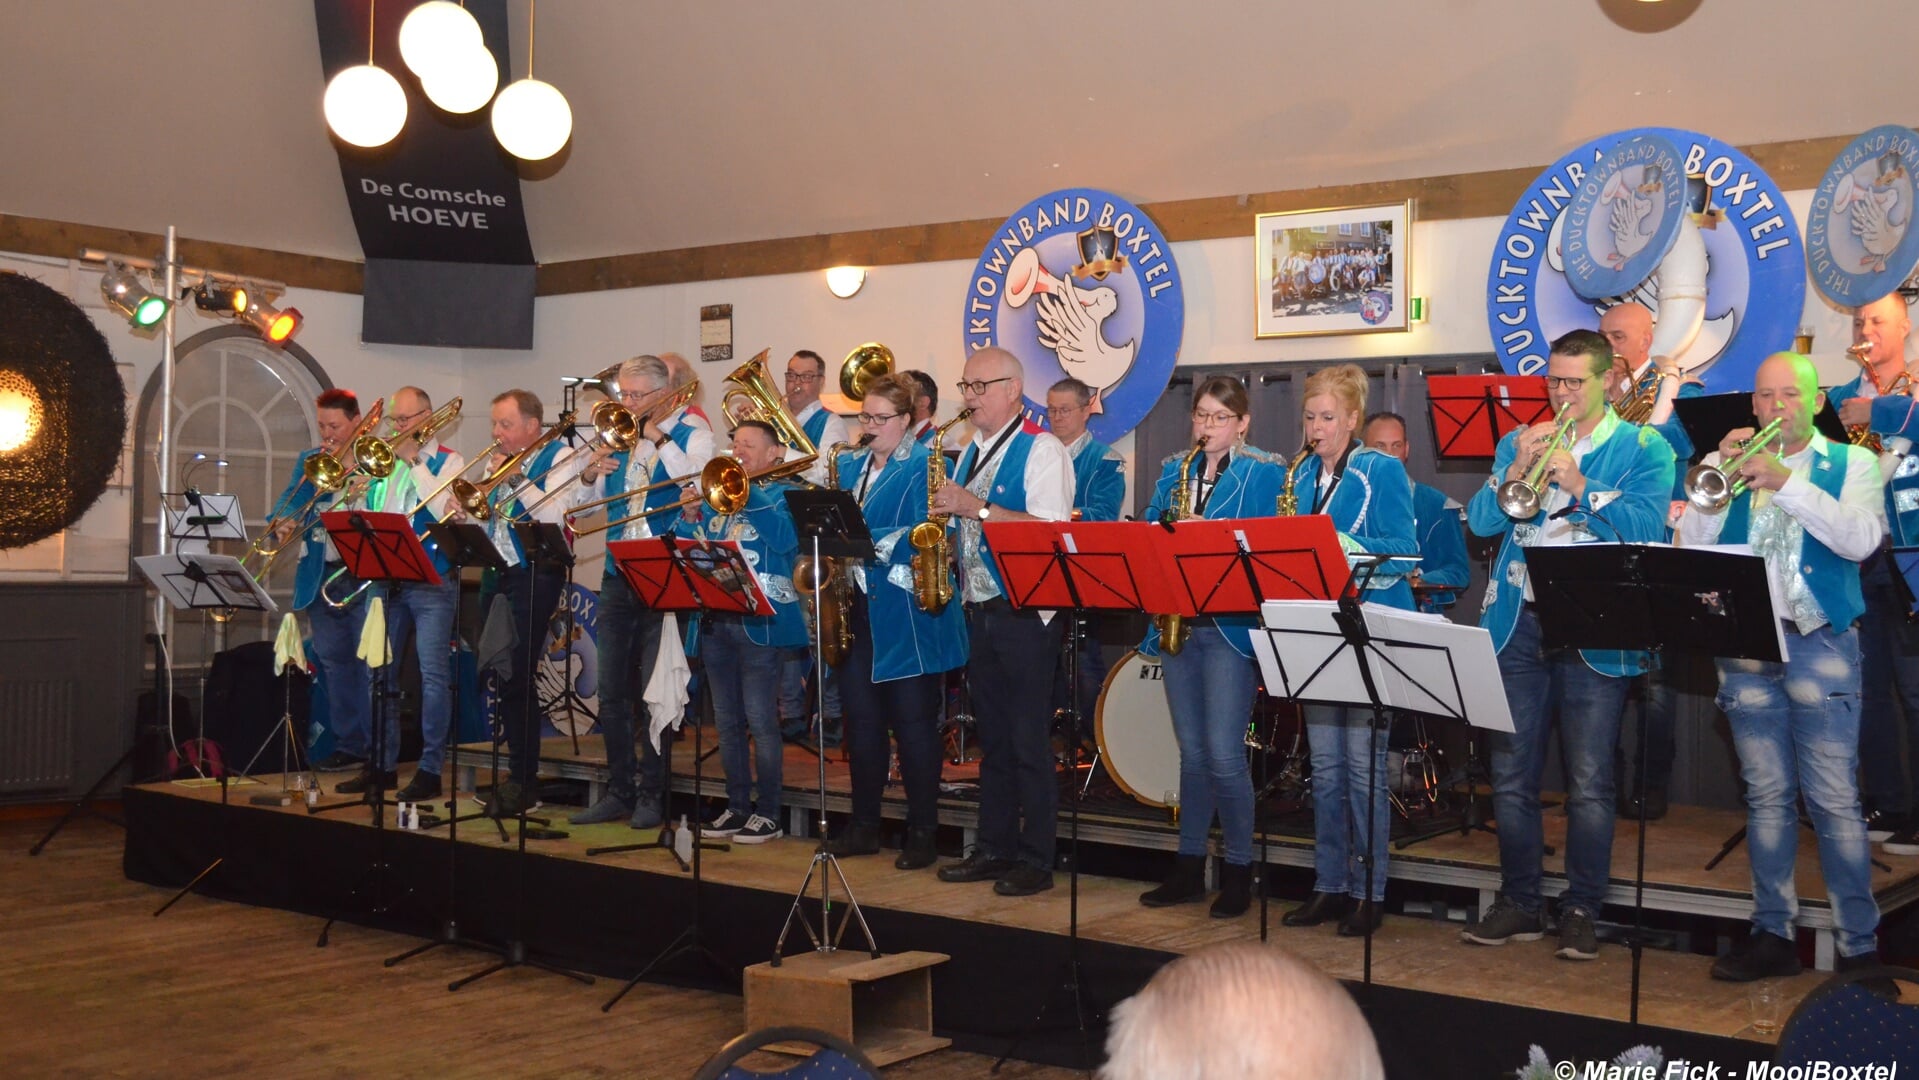 The Ducktownband bracht een sfeervolle en muzikale middag tijdens het Vette Oliebollenfestijn zondagmiddag in De Comsche Hoeve.